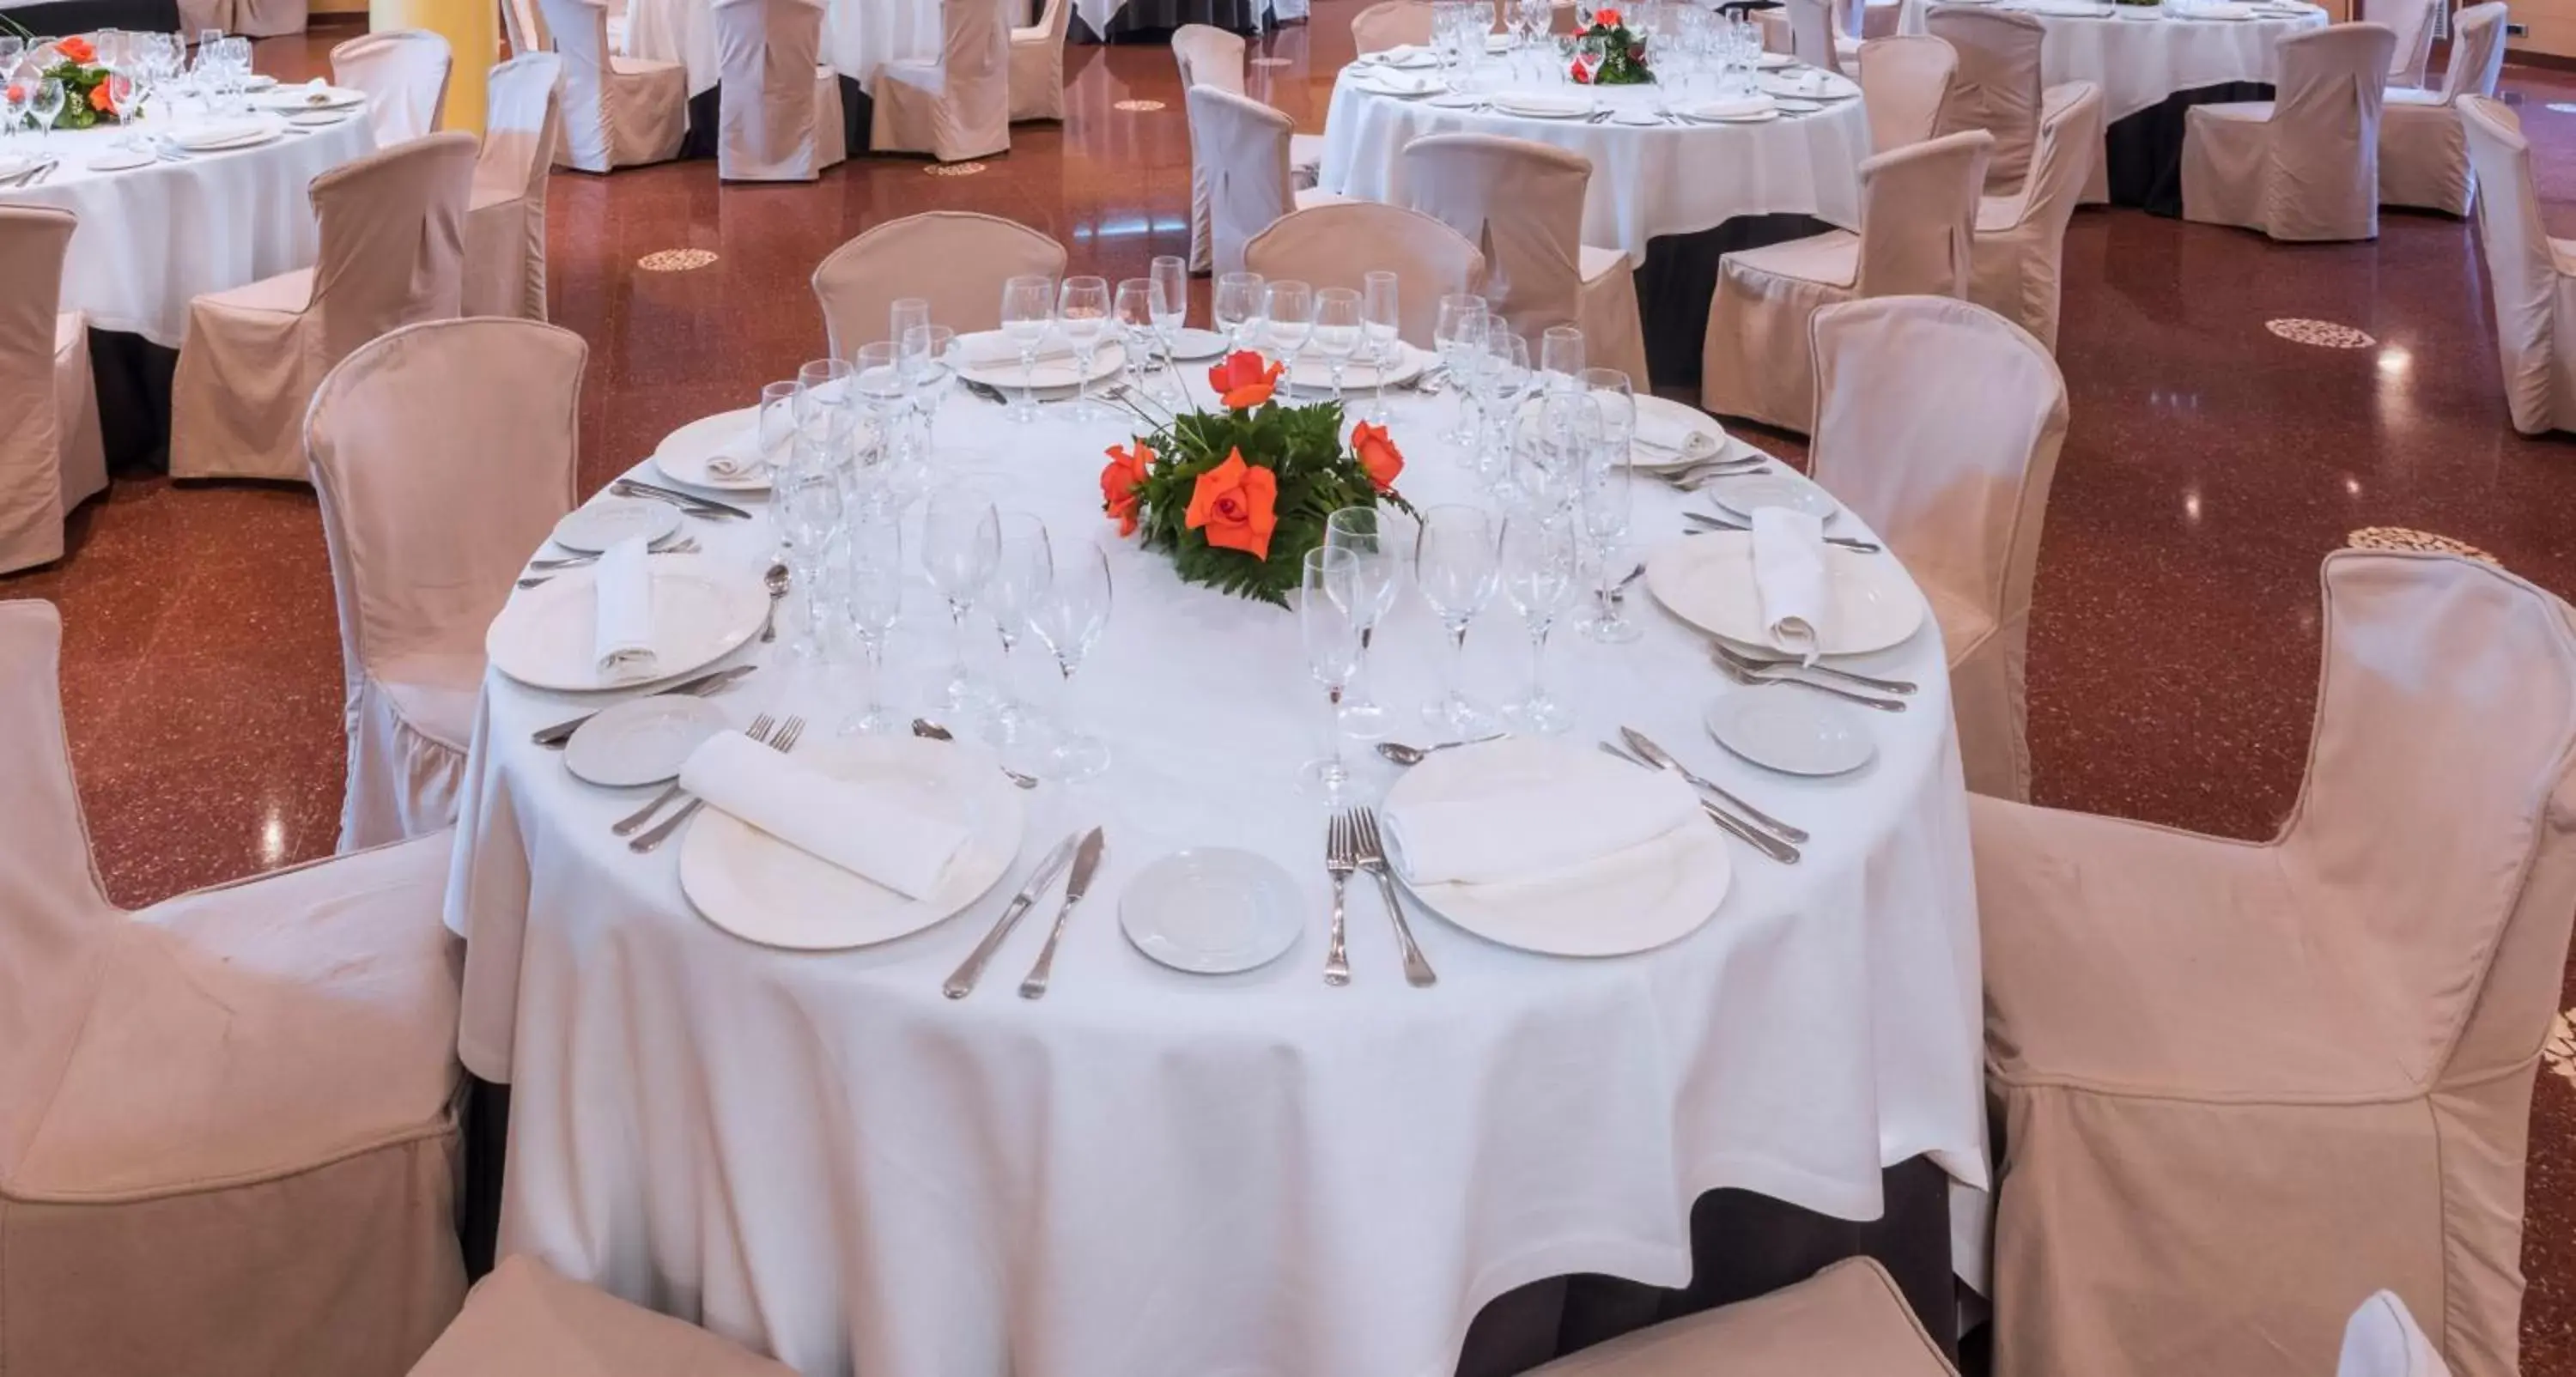 Restaurant/places to eat, Banquet Facilities in Ciudad de Castelldefels